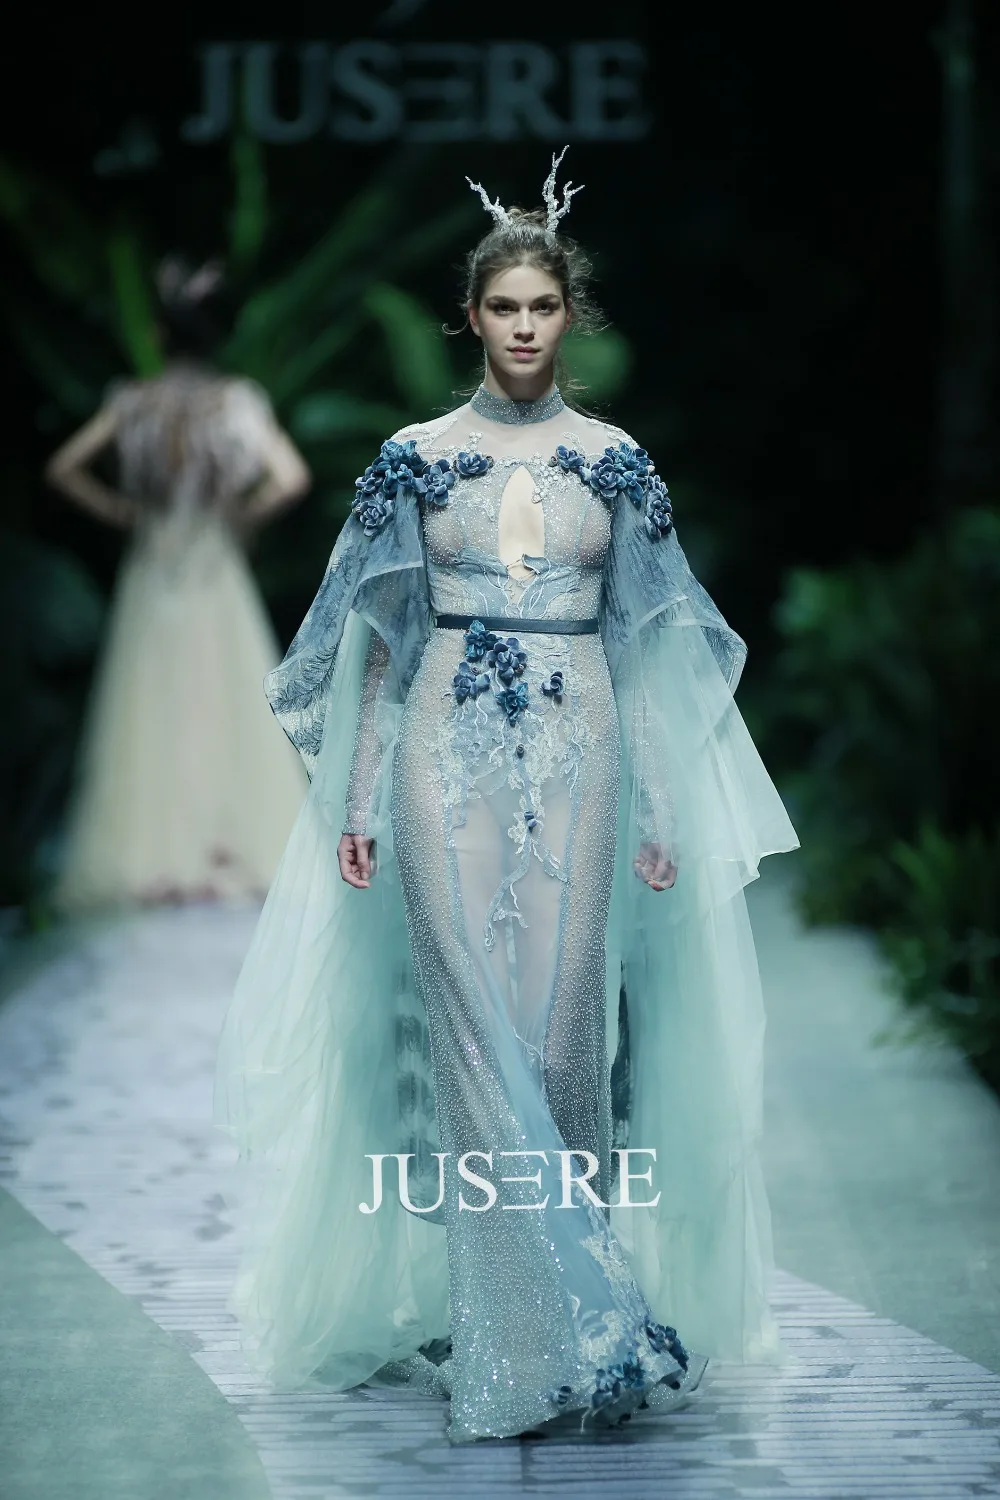 Jusere Мода Подиум стиль подходит бисерные вечерние платья плиссированные рукава с гофрированными манжетами официальное платье с накидкой вечерние платья